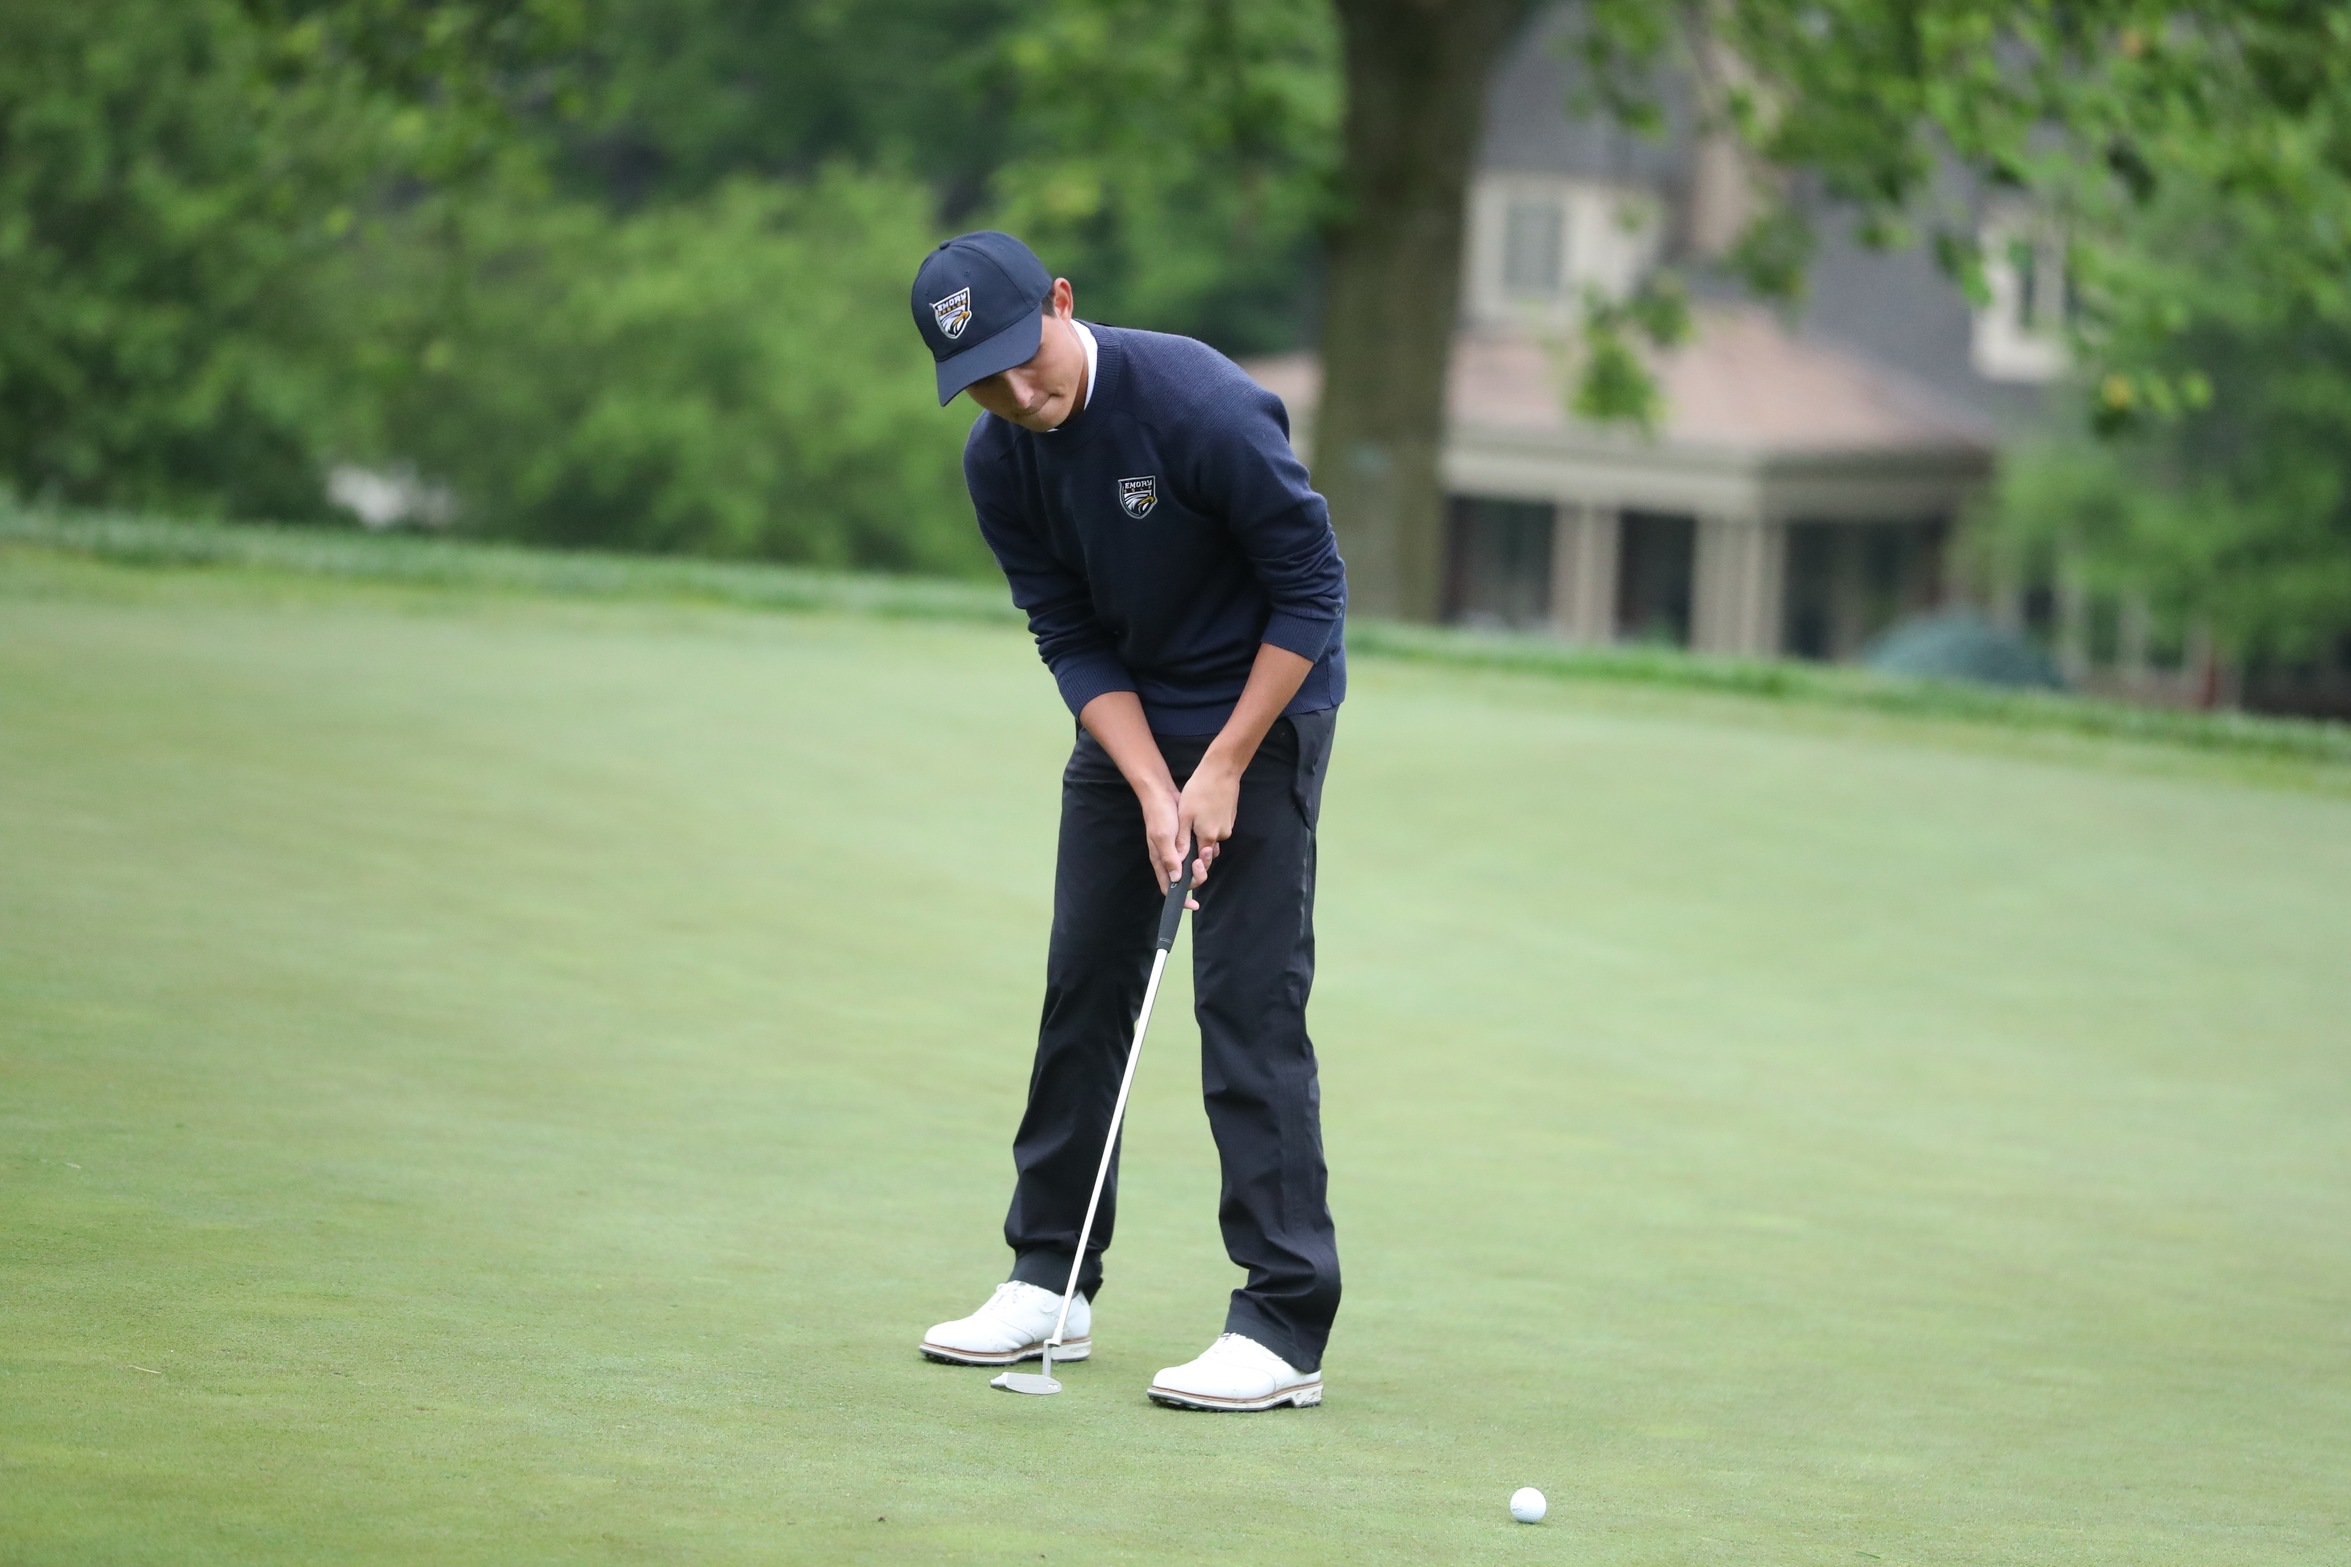 Men's Golf Makes Final Cut at NCAA Championships